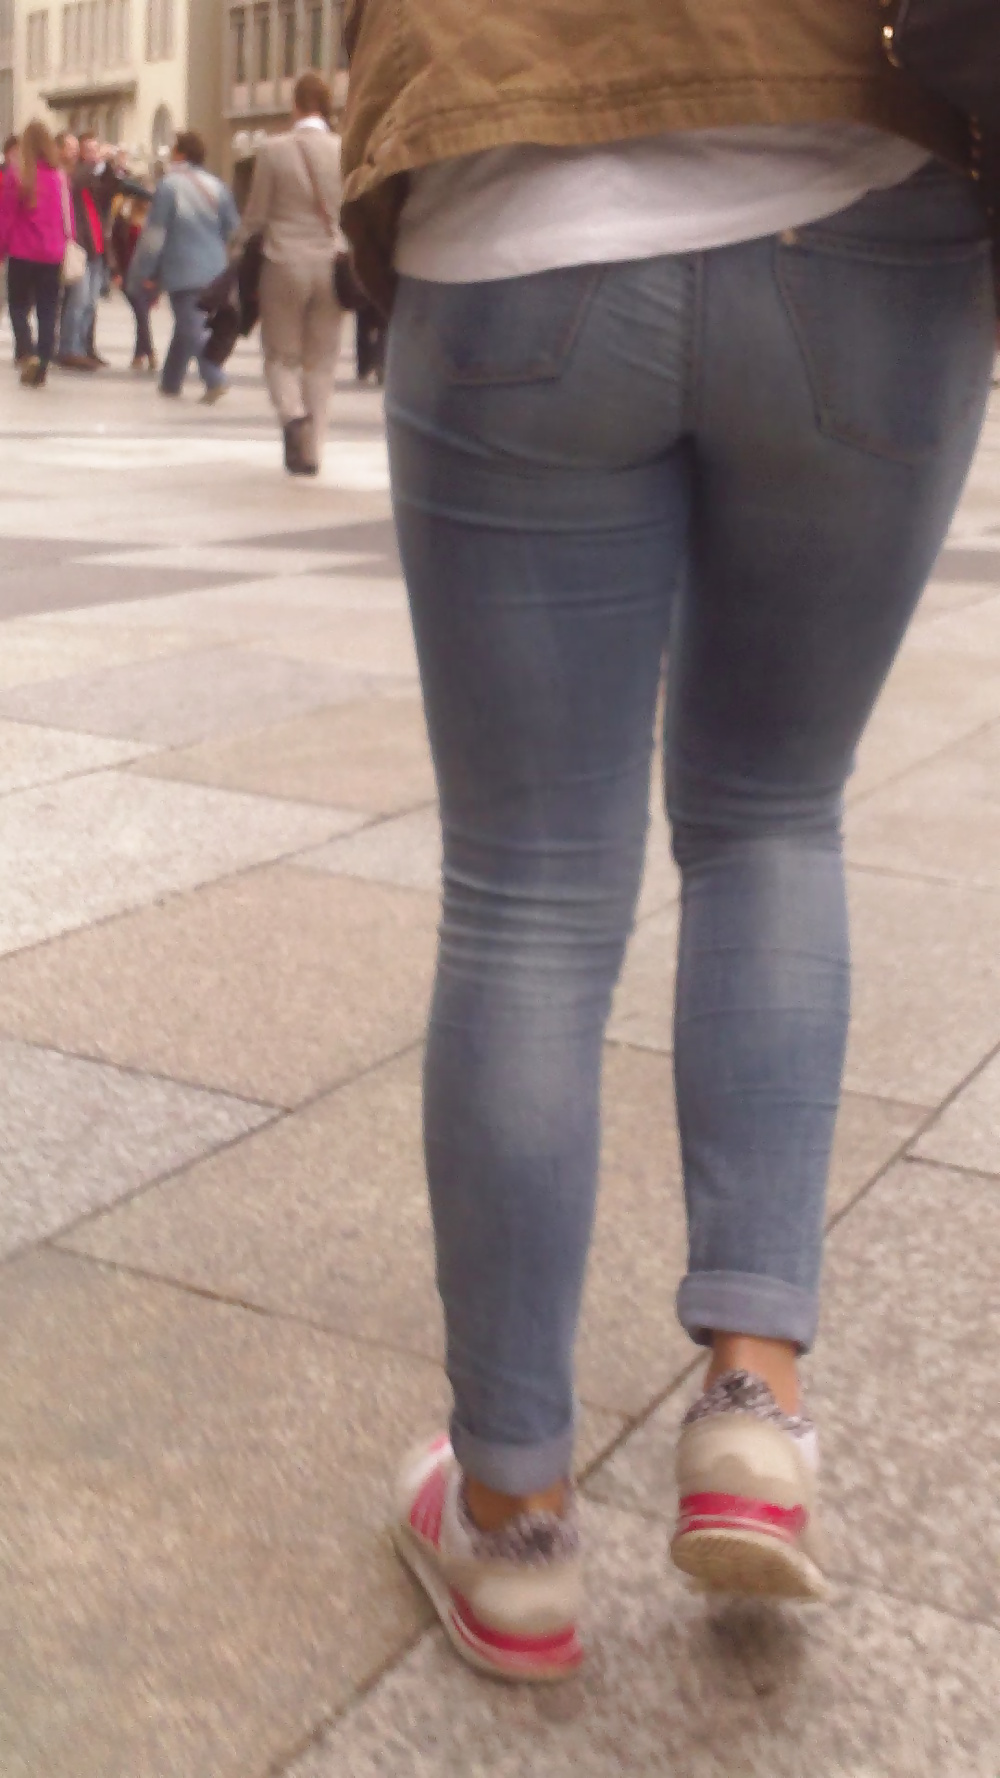 Popular teen girls ass & butt in jeans Part 6 #32010338